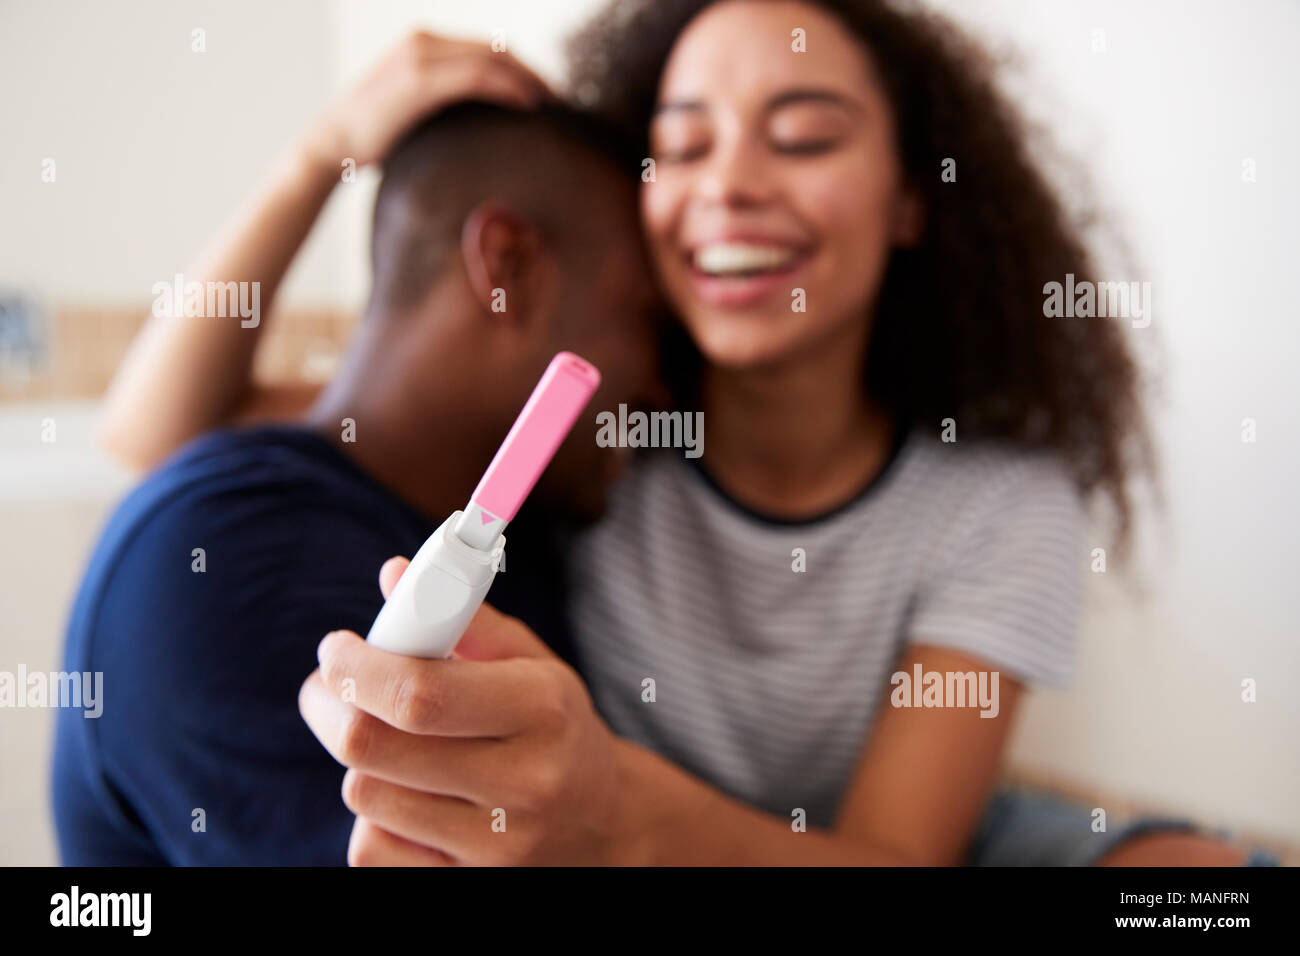 Paar feiern positiven Hauptschwangerschafttest Ergebnis Stockfoto